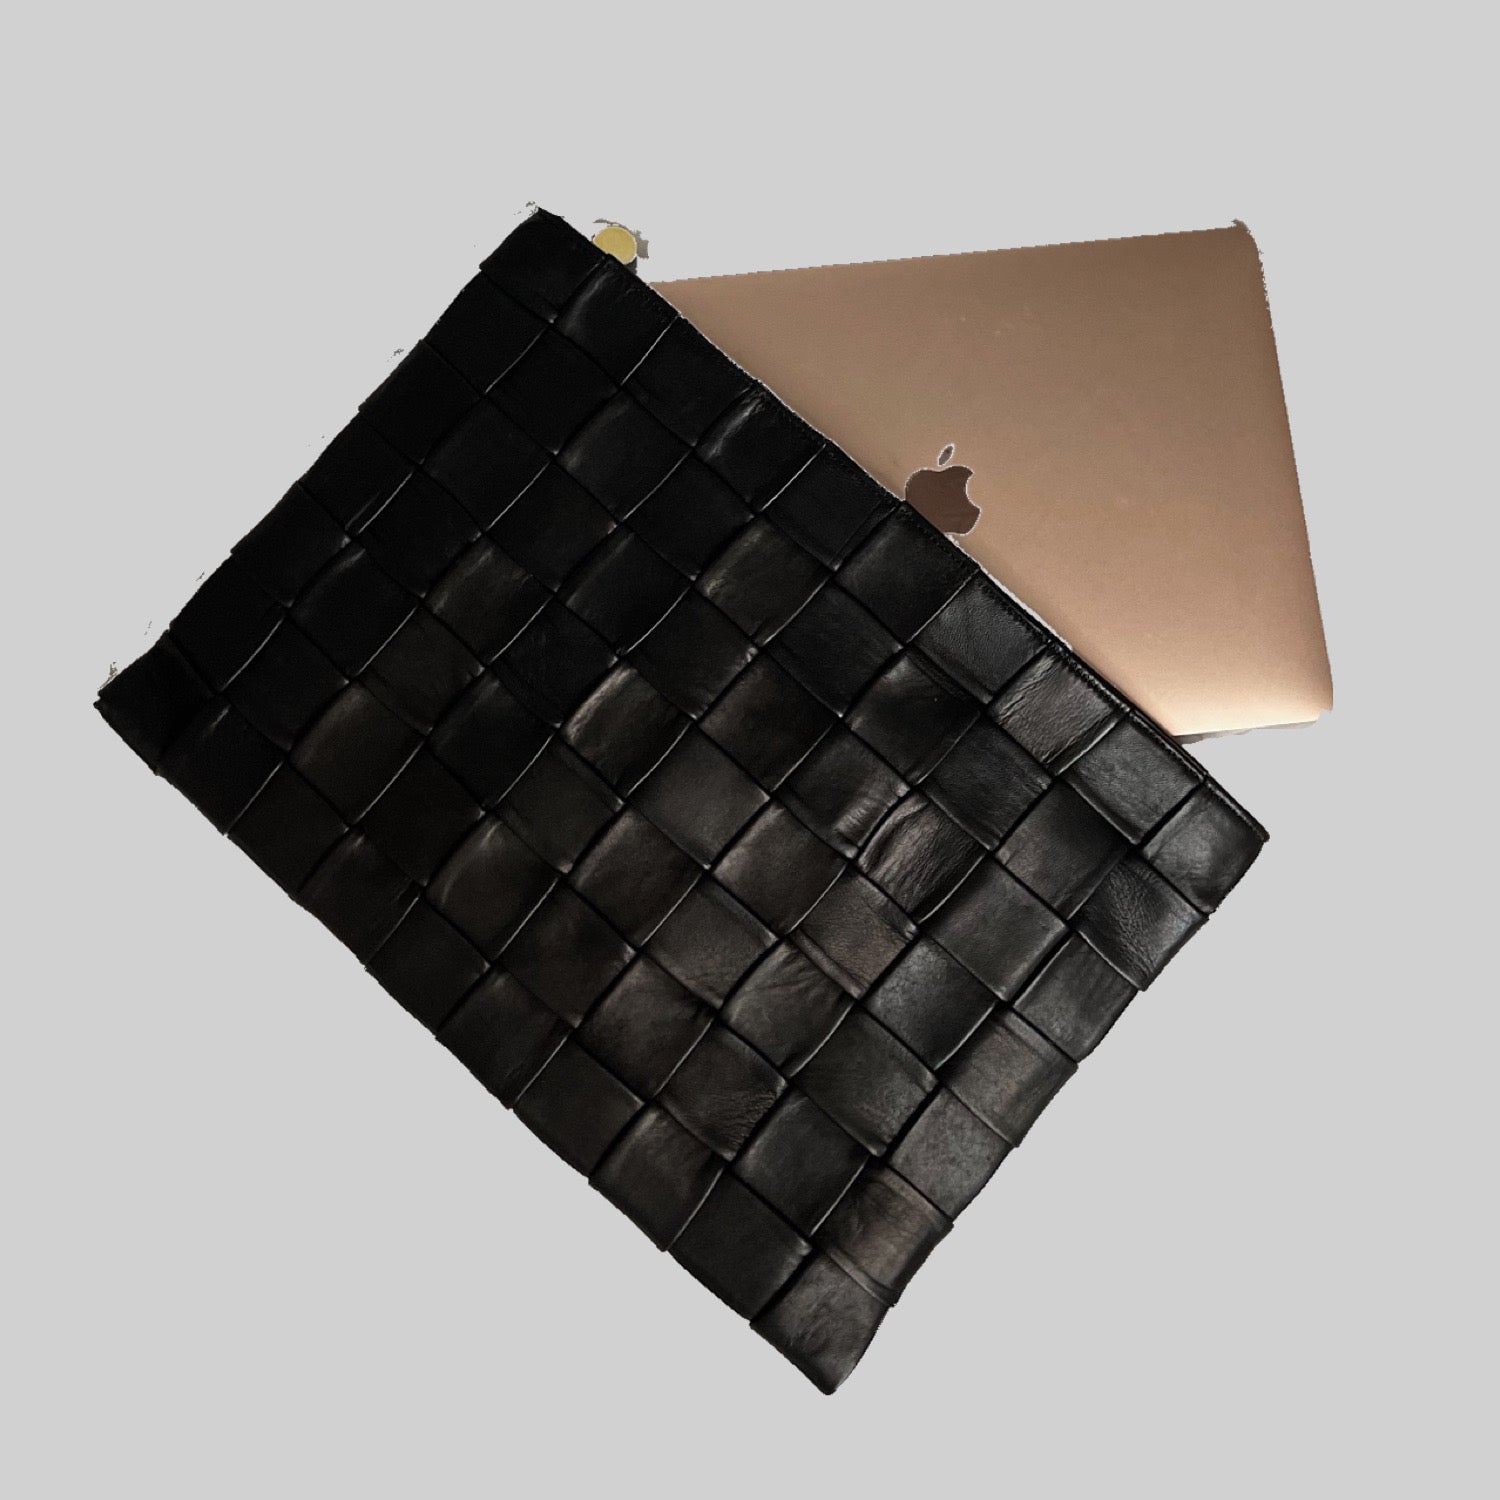 Ribichini Square Laptop i sort: Elegant, praktisk og beskyttende veske for bærbar datamaskin, ideell for stilfullt arbeid eller studier uansett sted.